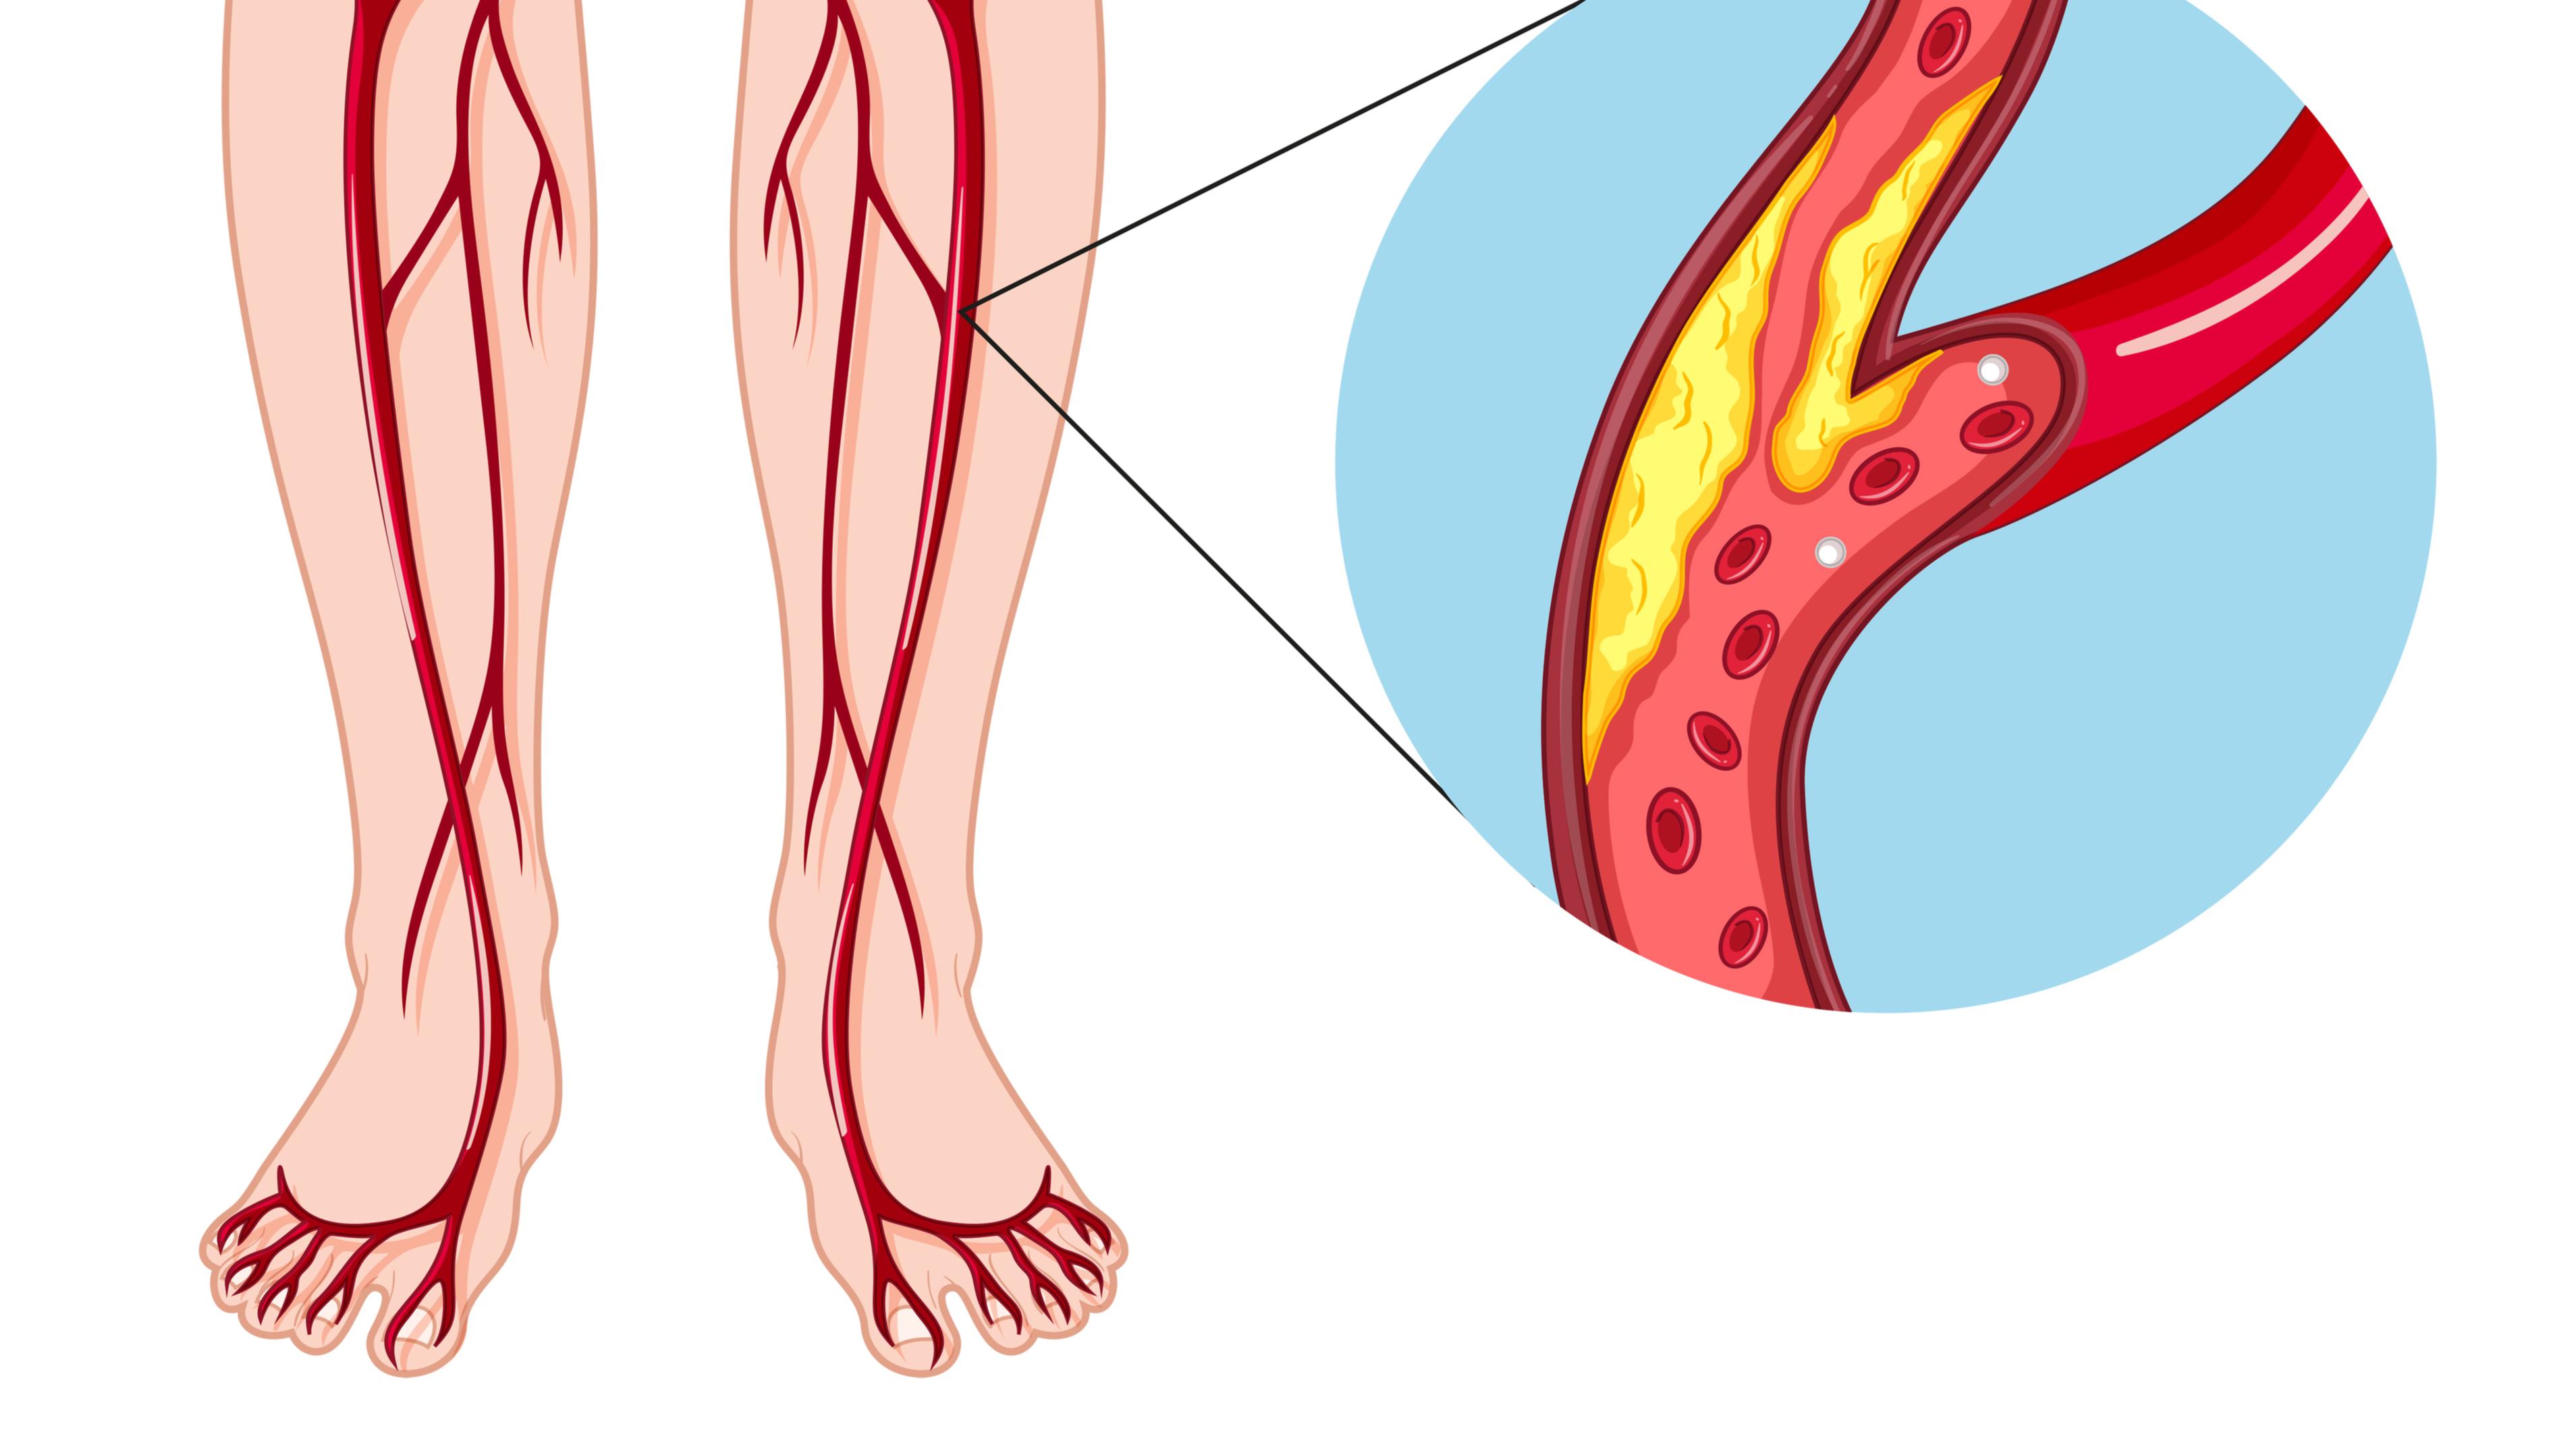 Заболевания артерий вен. Облитерирующий атеросклероз вен нижних конечностей. Облитерирующий атеросклероз сосудов конечностей. Облитерирующий атеросклероз сосудов ног. Атеросклероз артерий нижних конечностей.